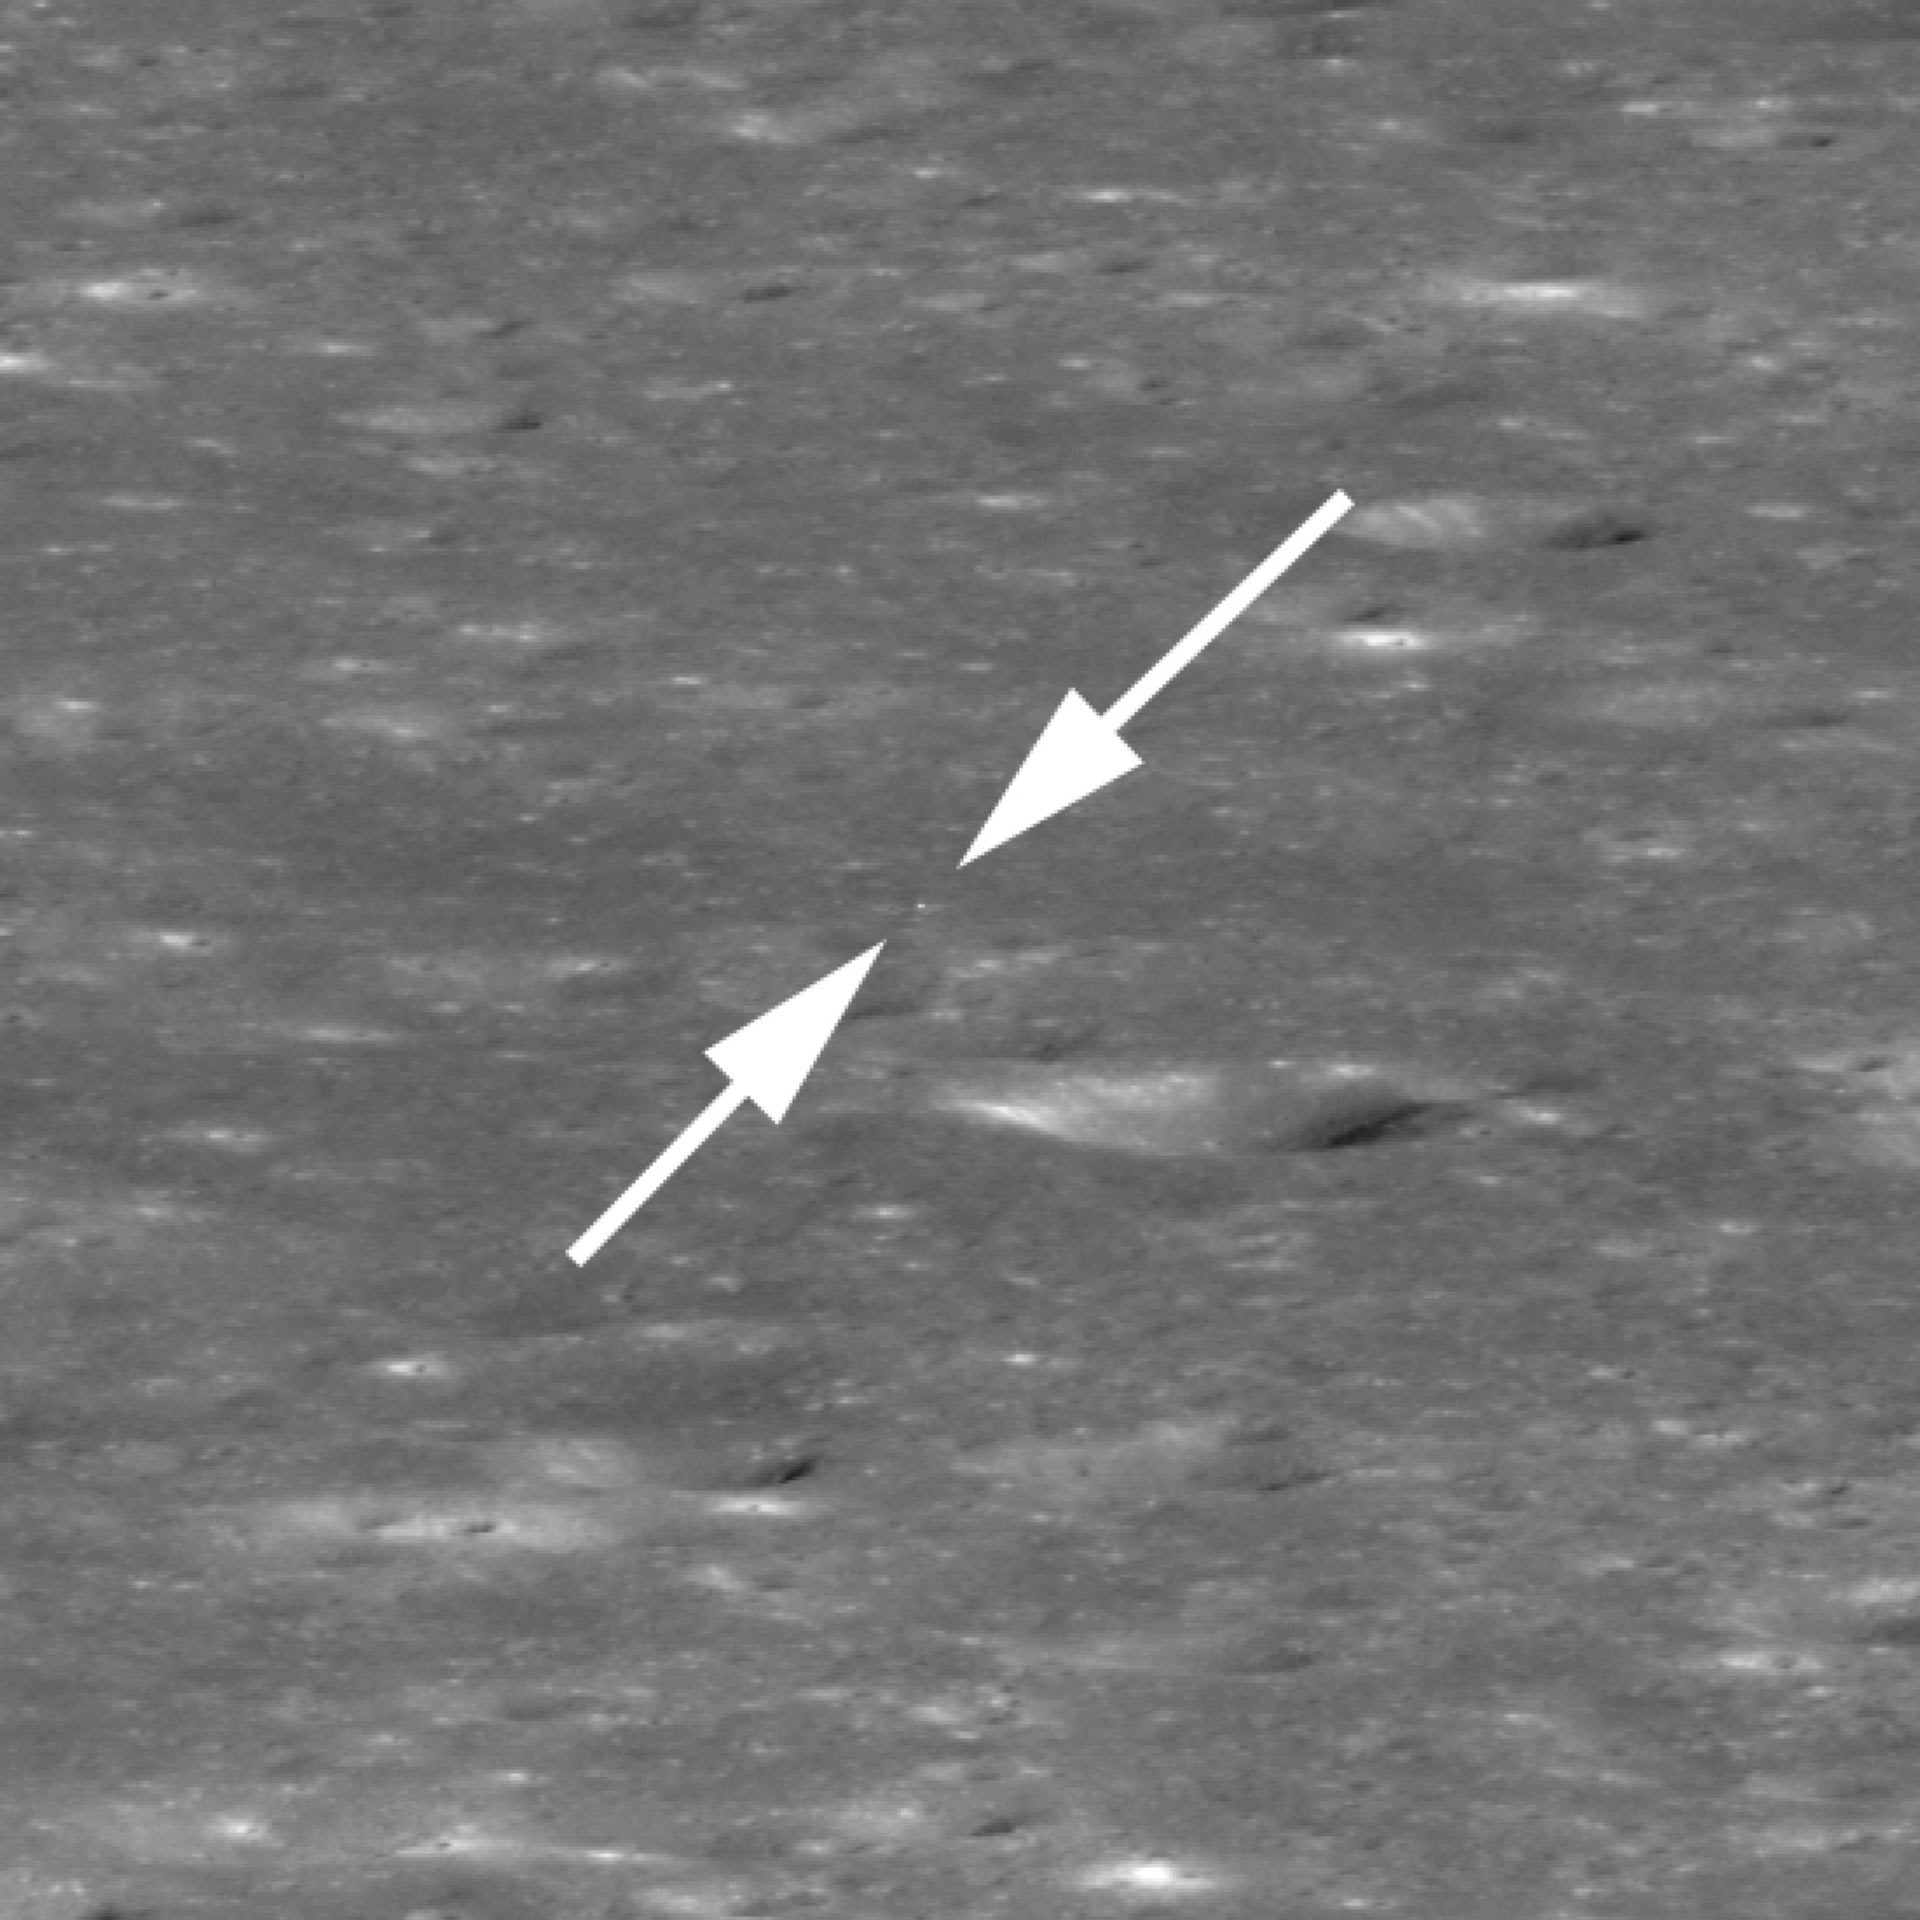 Как выглядит зонд. Снимки НАСА обратной стороны Луны. Зонд Lunar reconnaissance Orbiter. Обратная сторона Луны НАСА. Обратная сторона Луны реальные снимки.